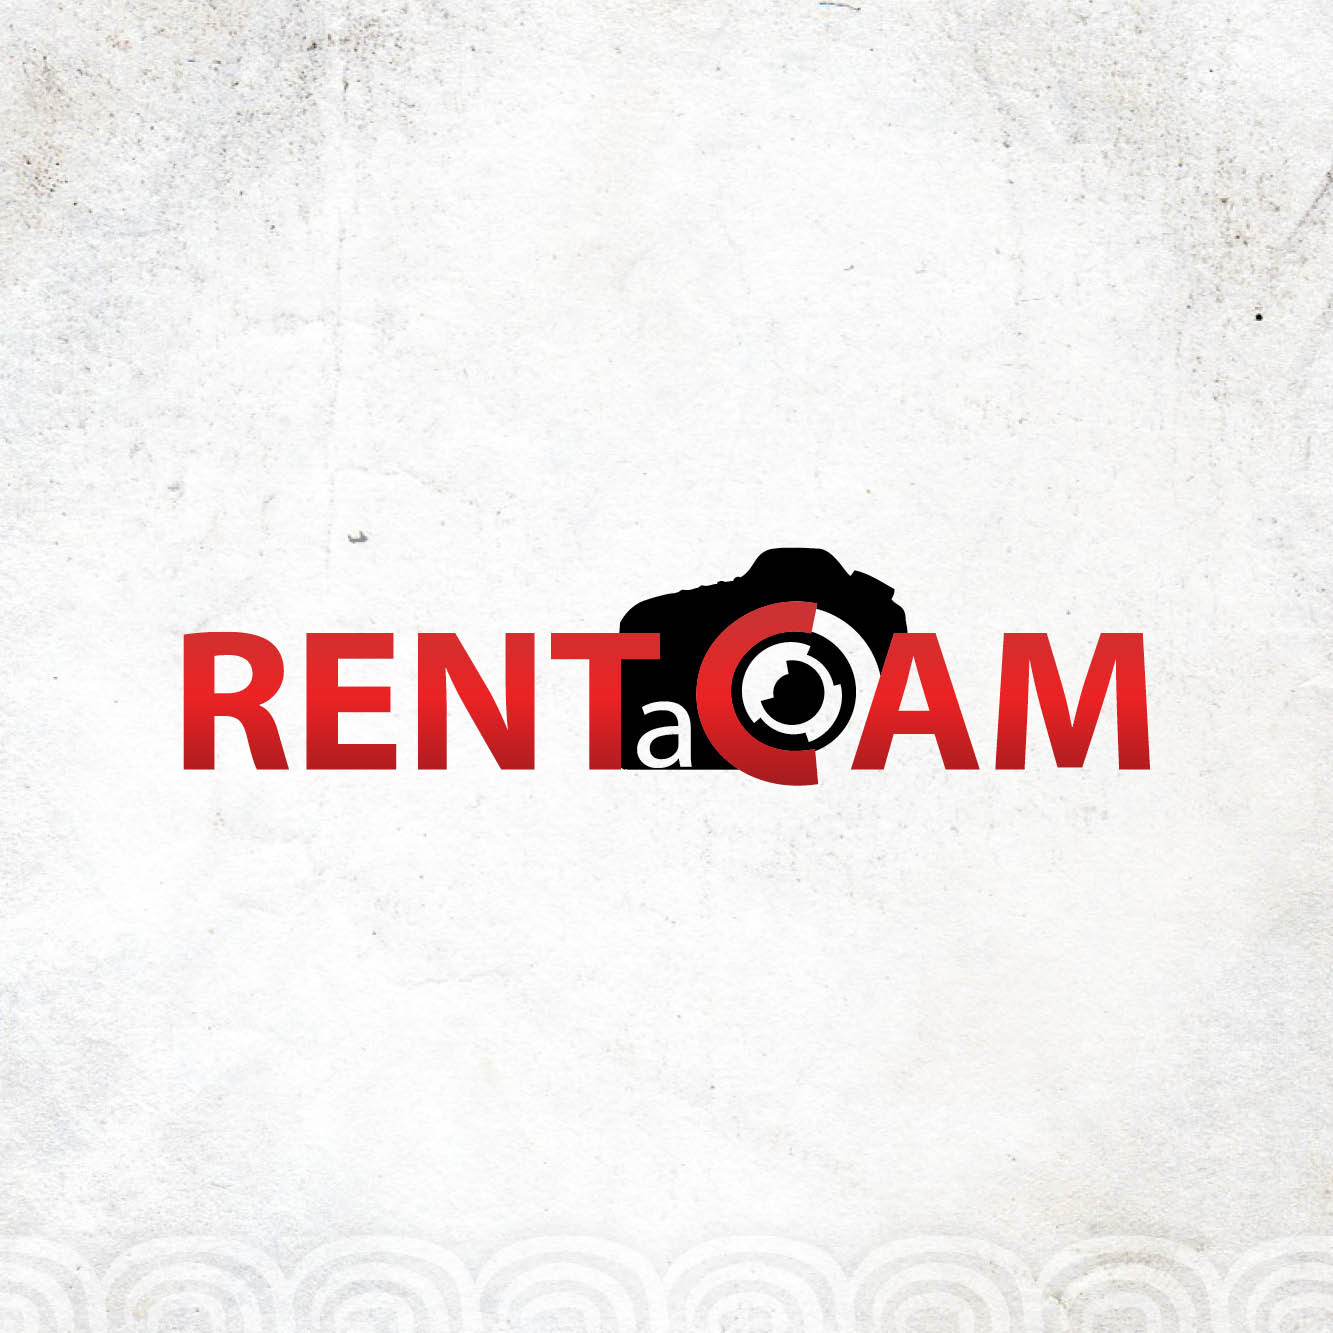 Logo RENTaCAM - The Design